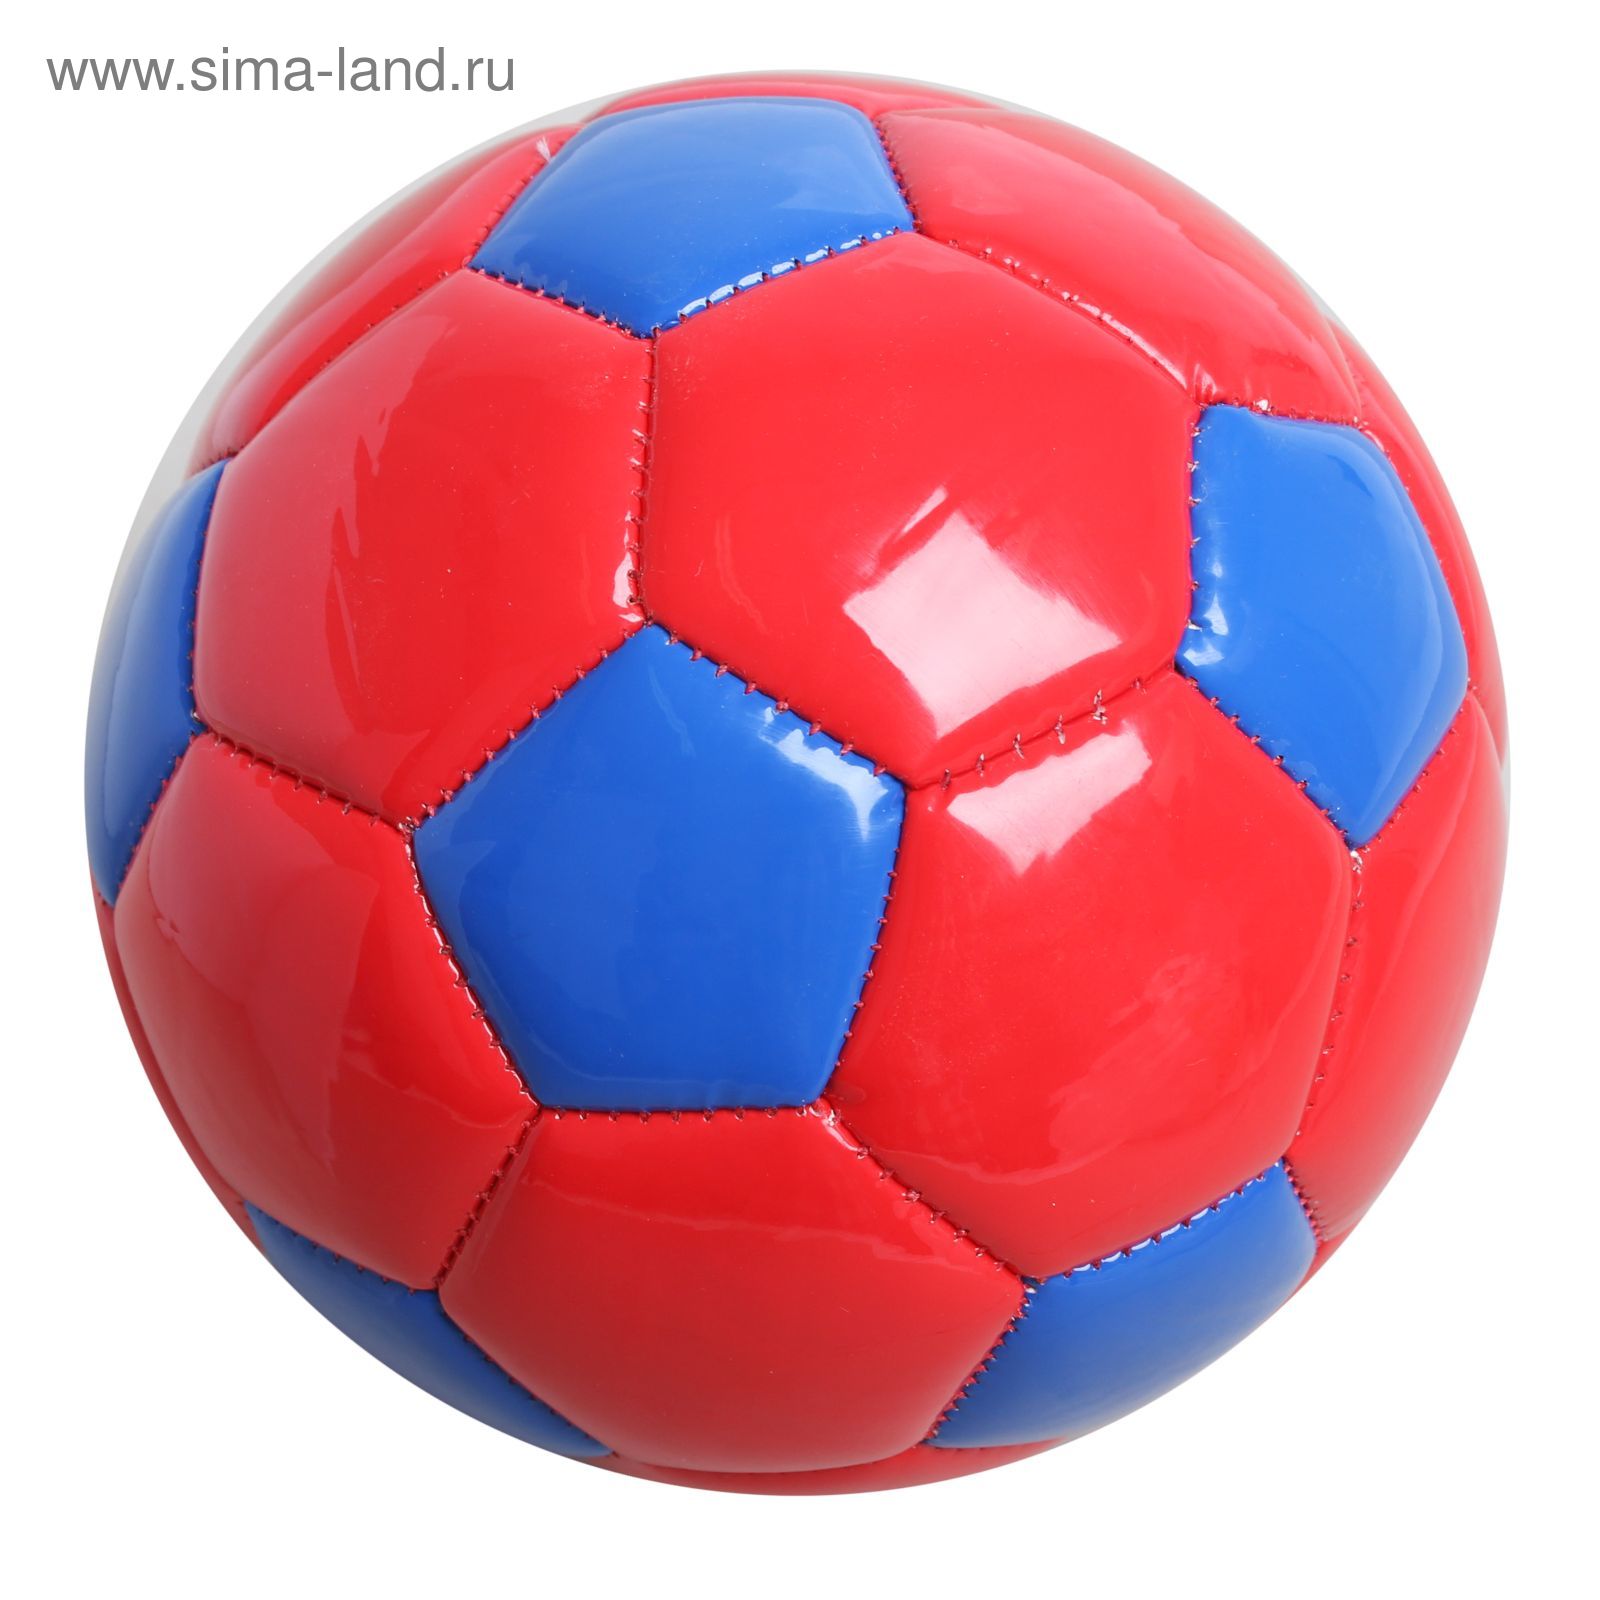 Мяч футбольный, 2 подслоя, PVC, машинная сшивка, размер 2, цвета микс